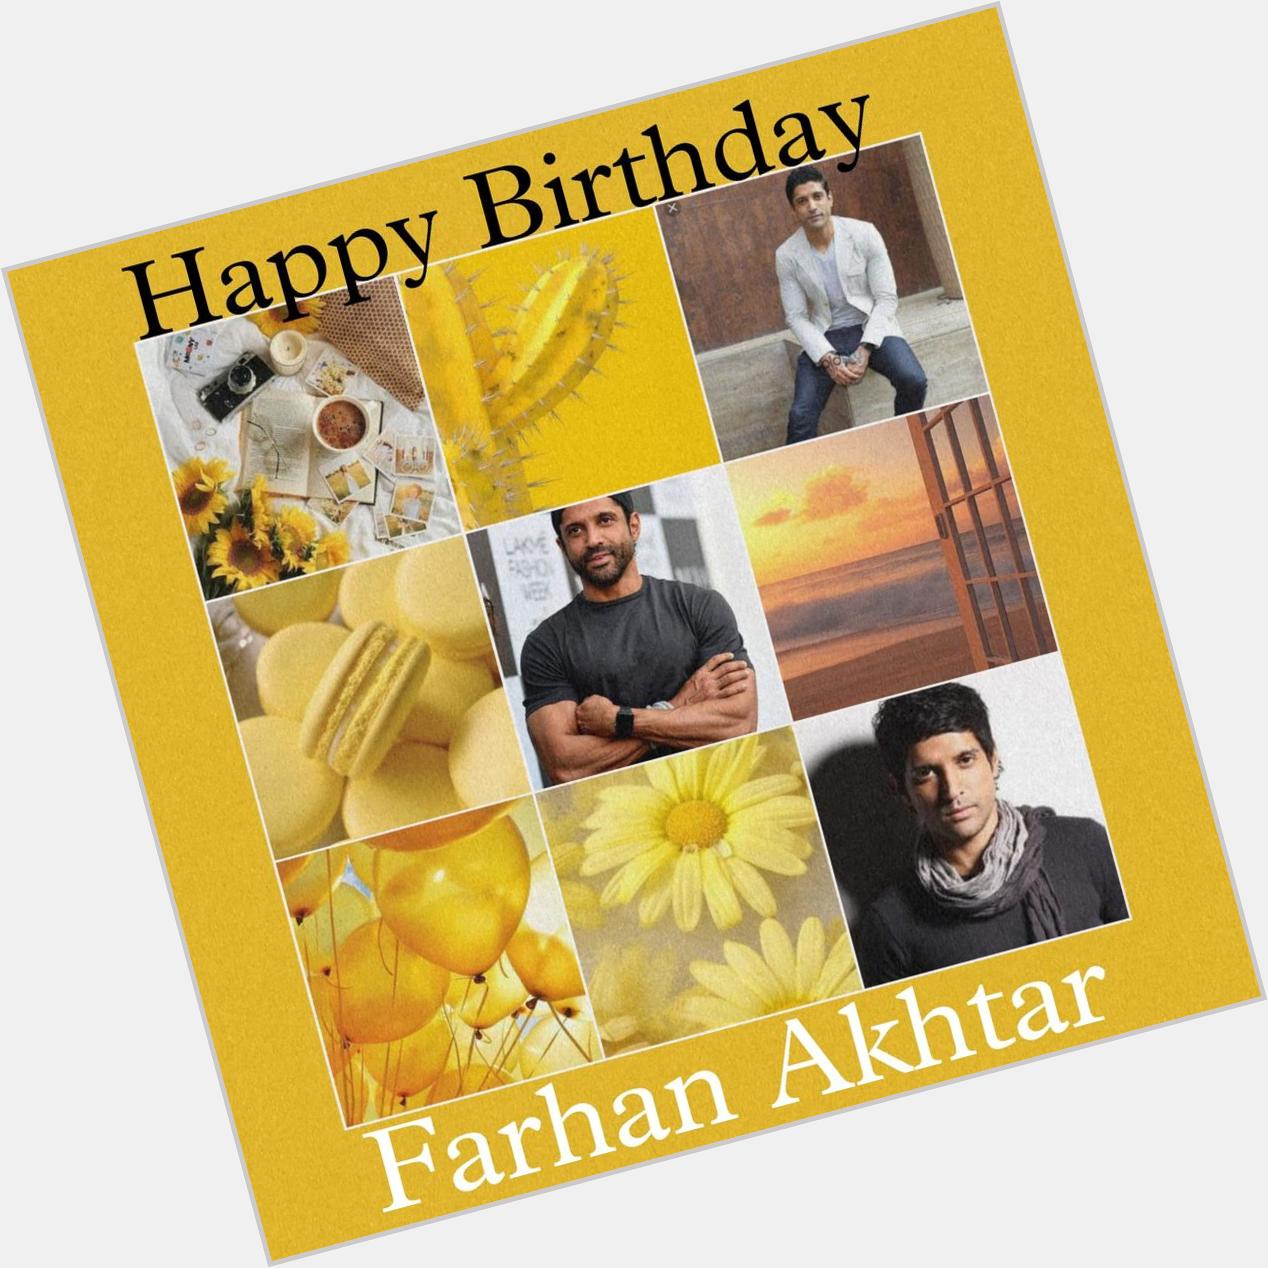 Happy Birthday
Farhan Akhtar   